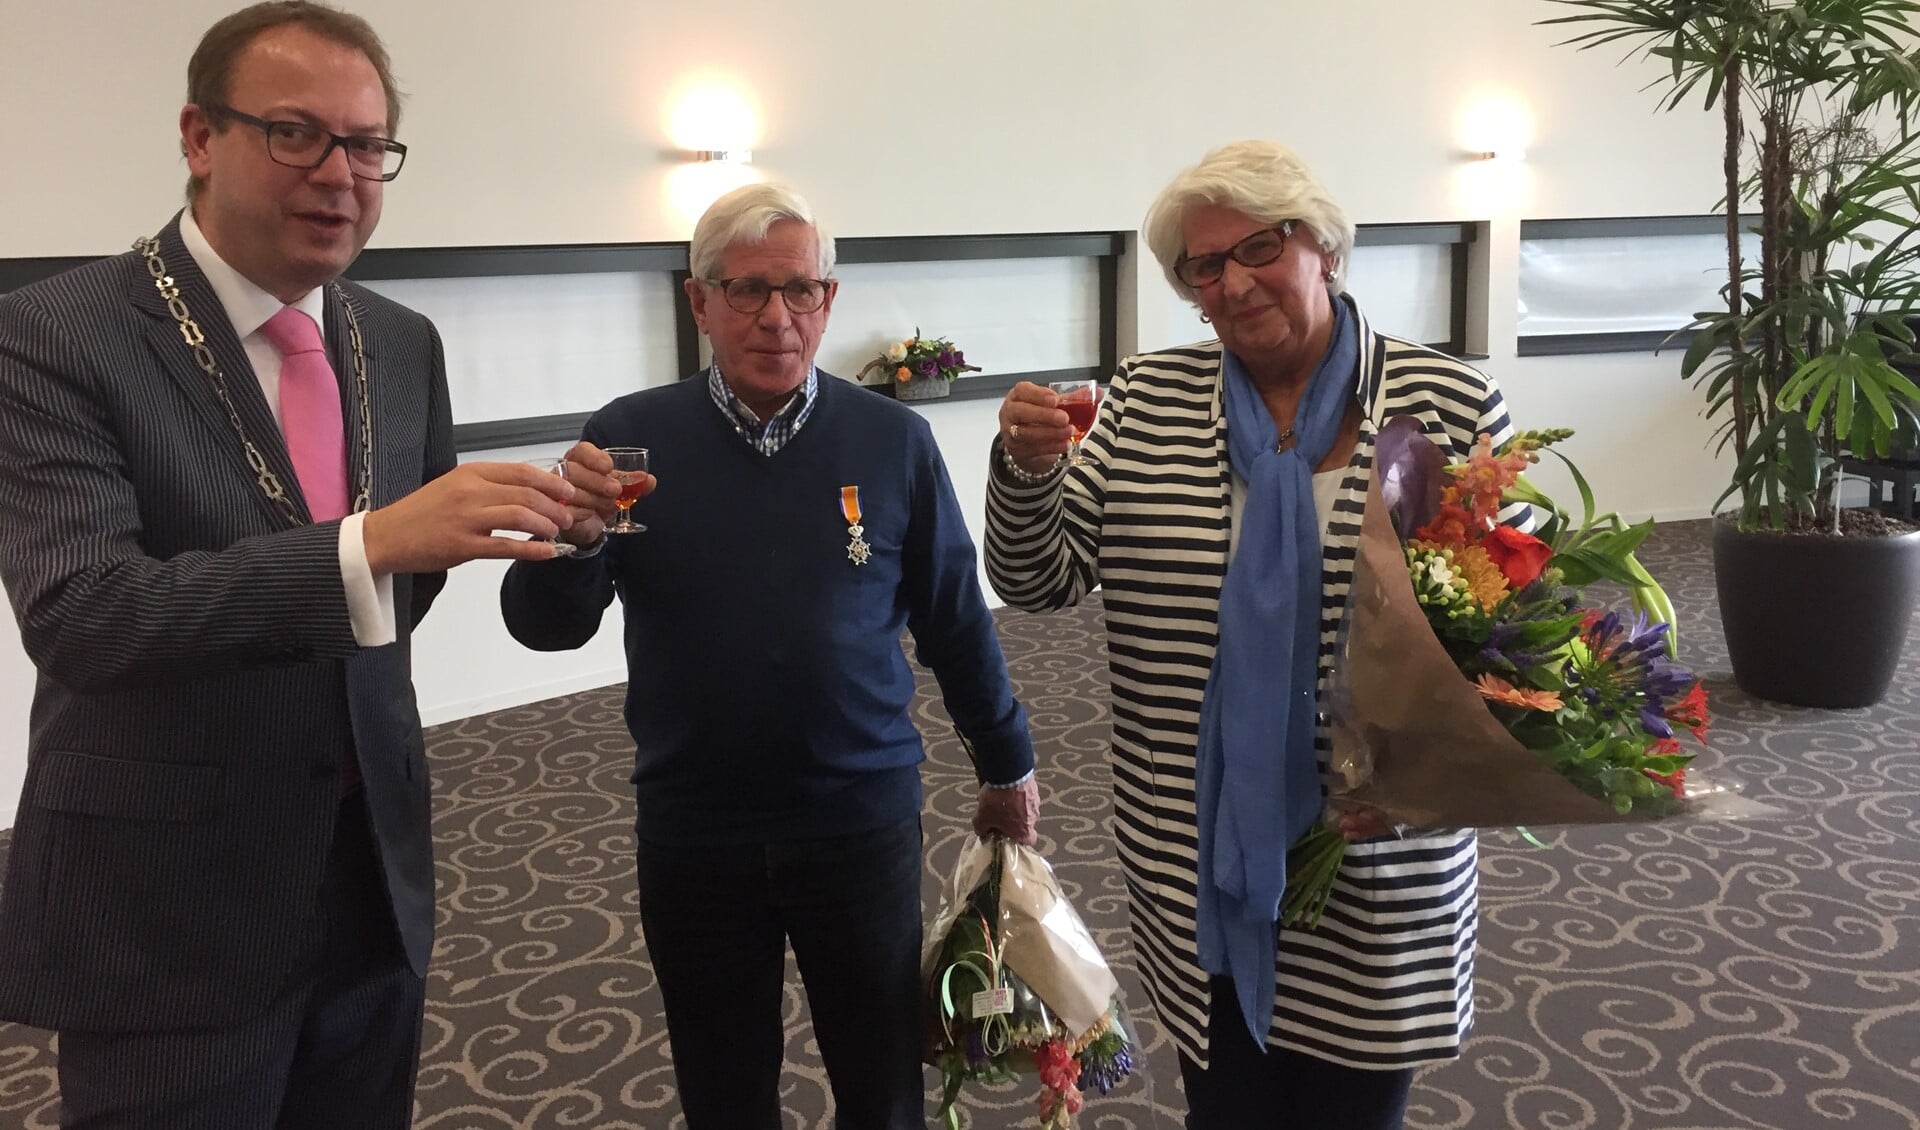 Burgemeester Van Benthem toost met het echtpaar Wolters